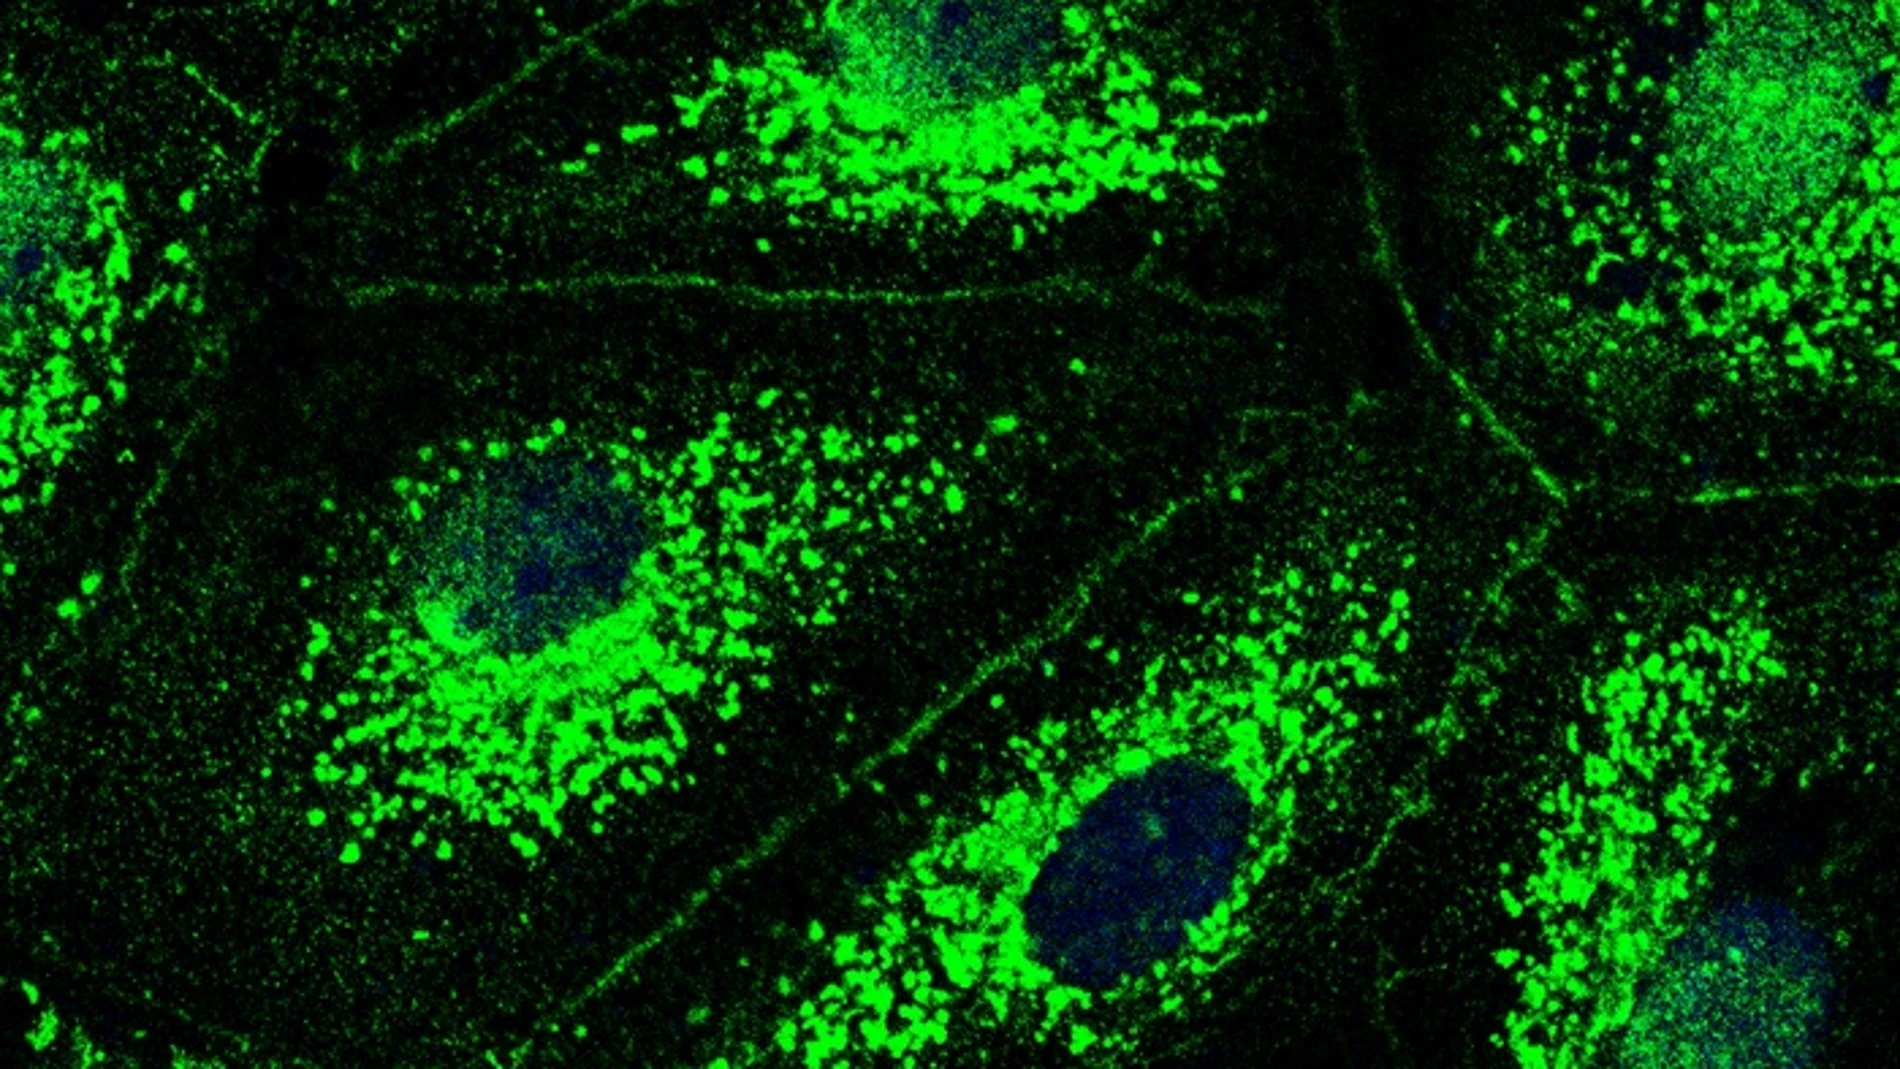 Imagen de microscopio de fluorescencia de células de los vasos sanguíneos pulmonares.CHARITÉ | LASTI ERFINANDA22/12/2022